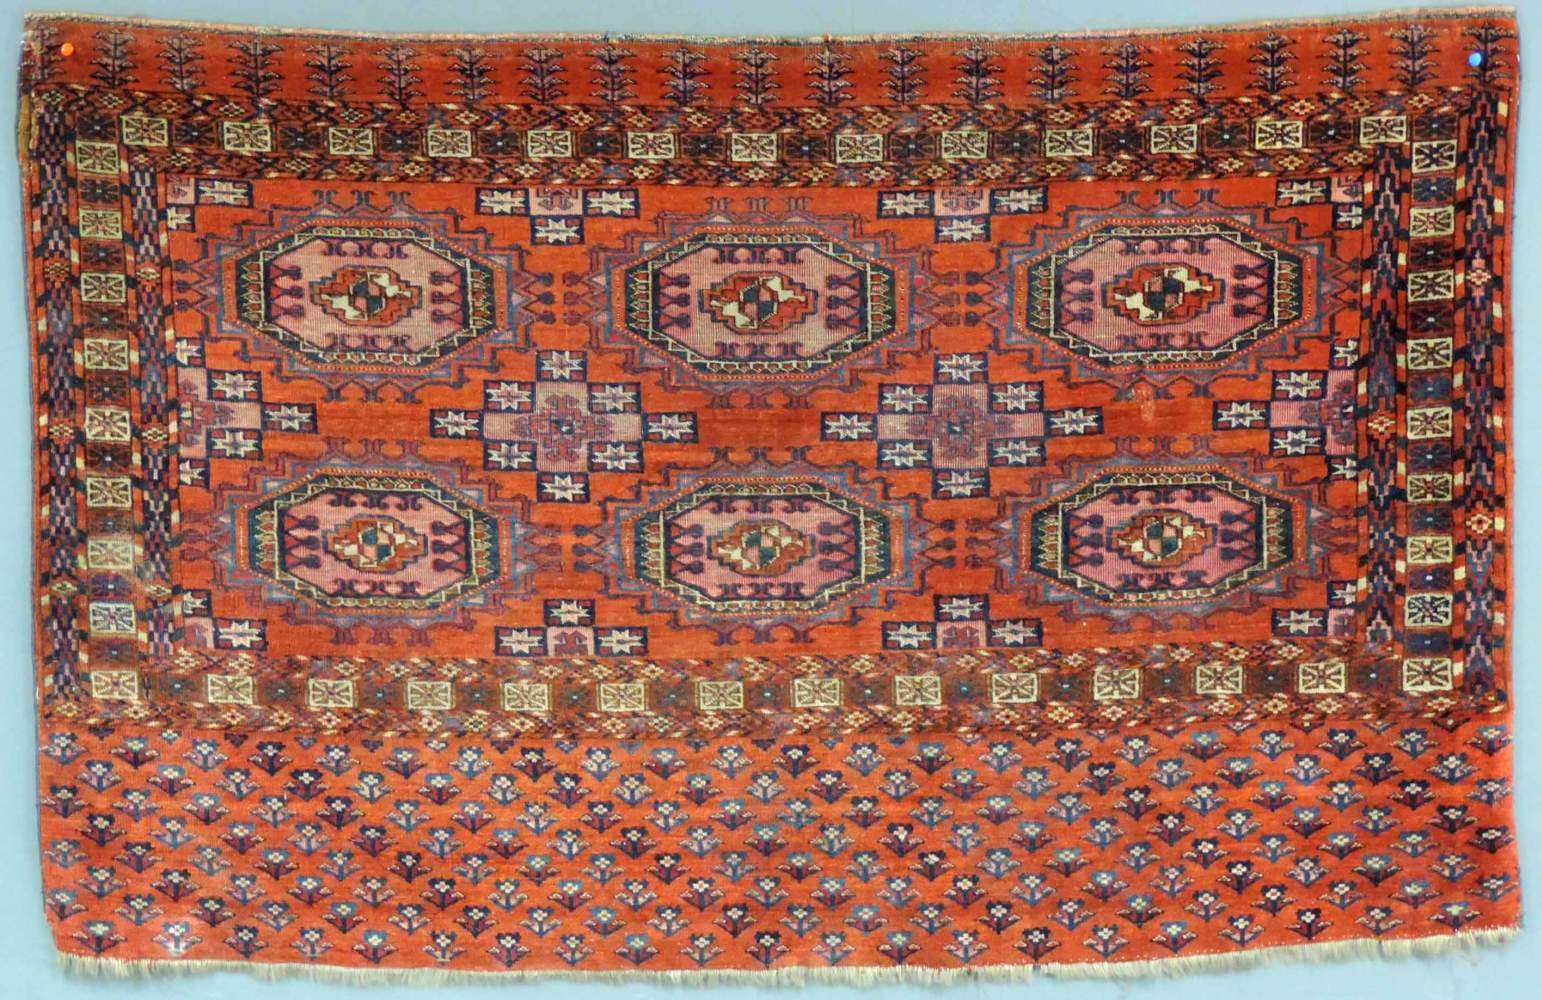 Tekke Tschowal Stammesteppich. Turkmenistan. Antik, um 1880. 74 cm x 118 cm. Handgeknüpft. Wolle und